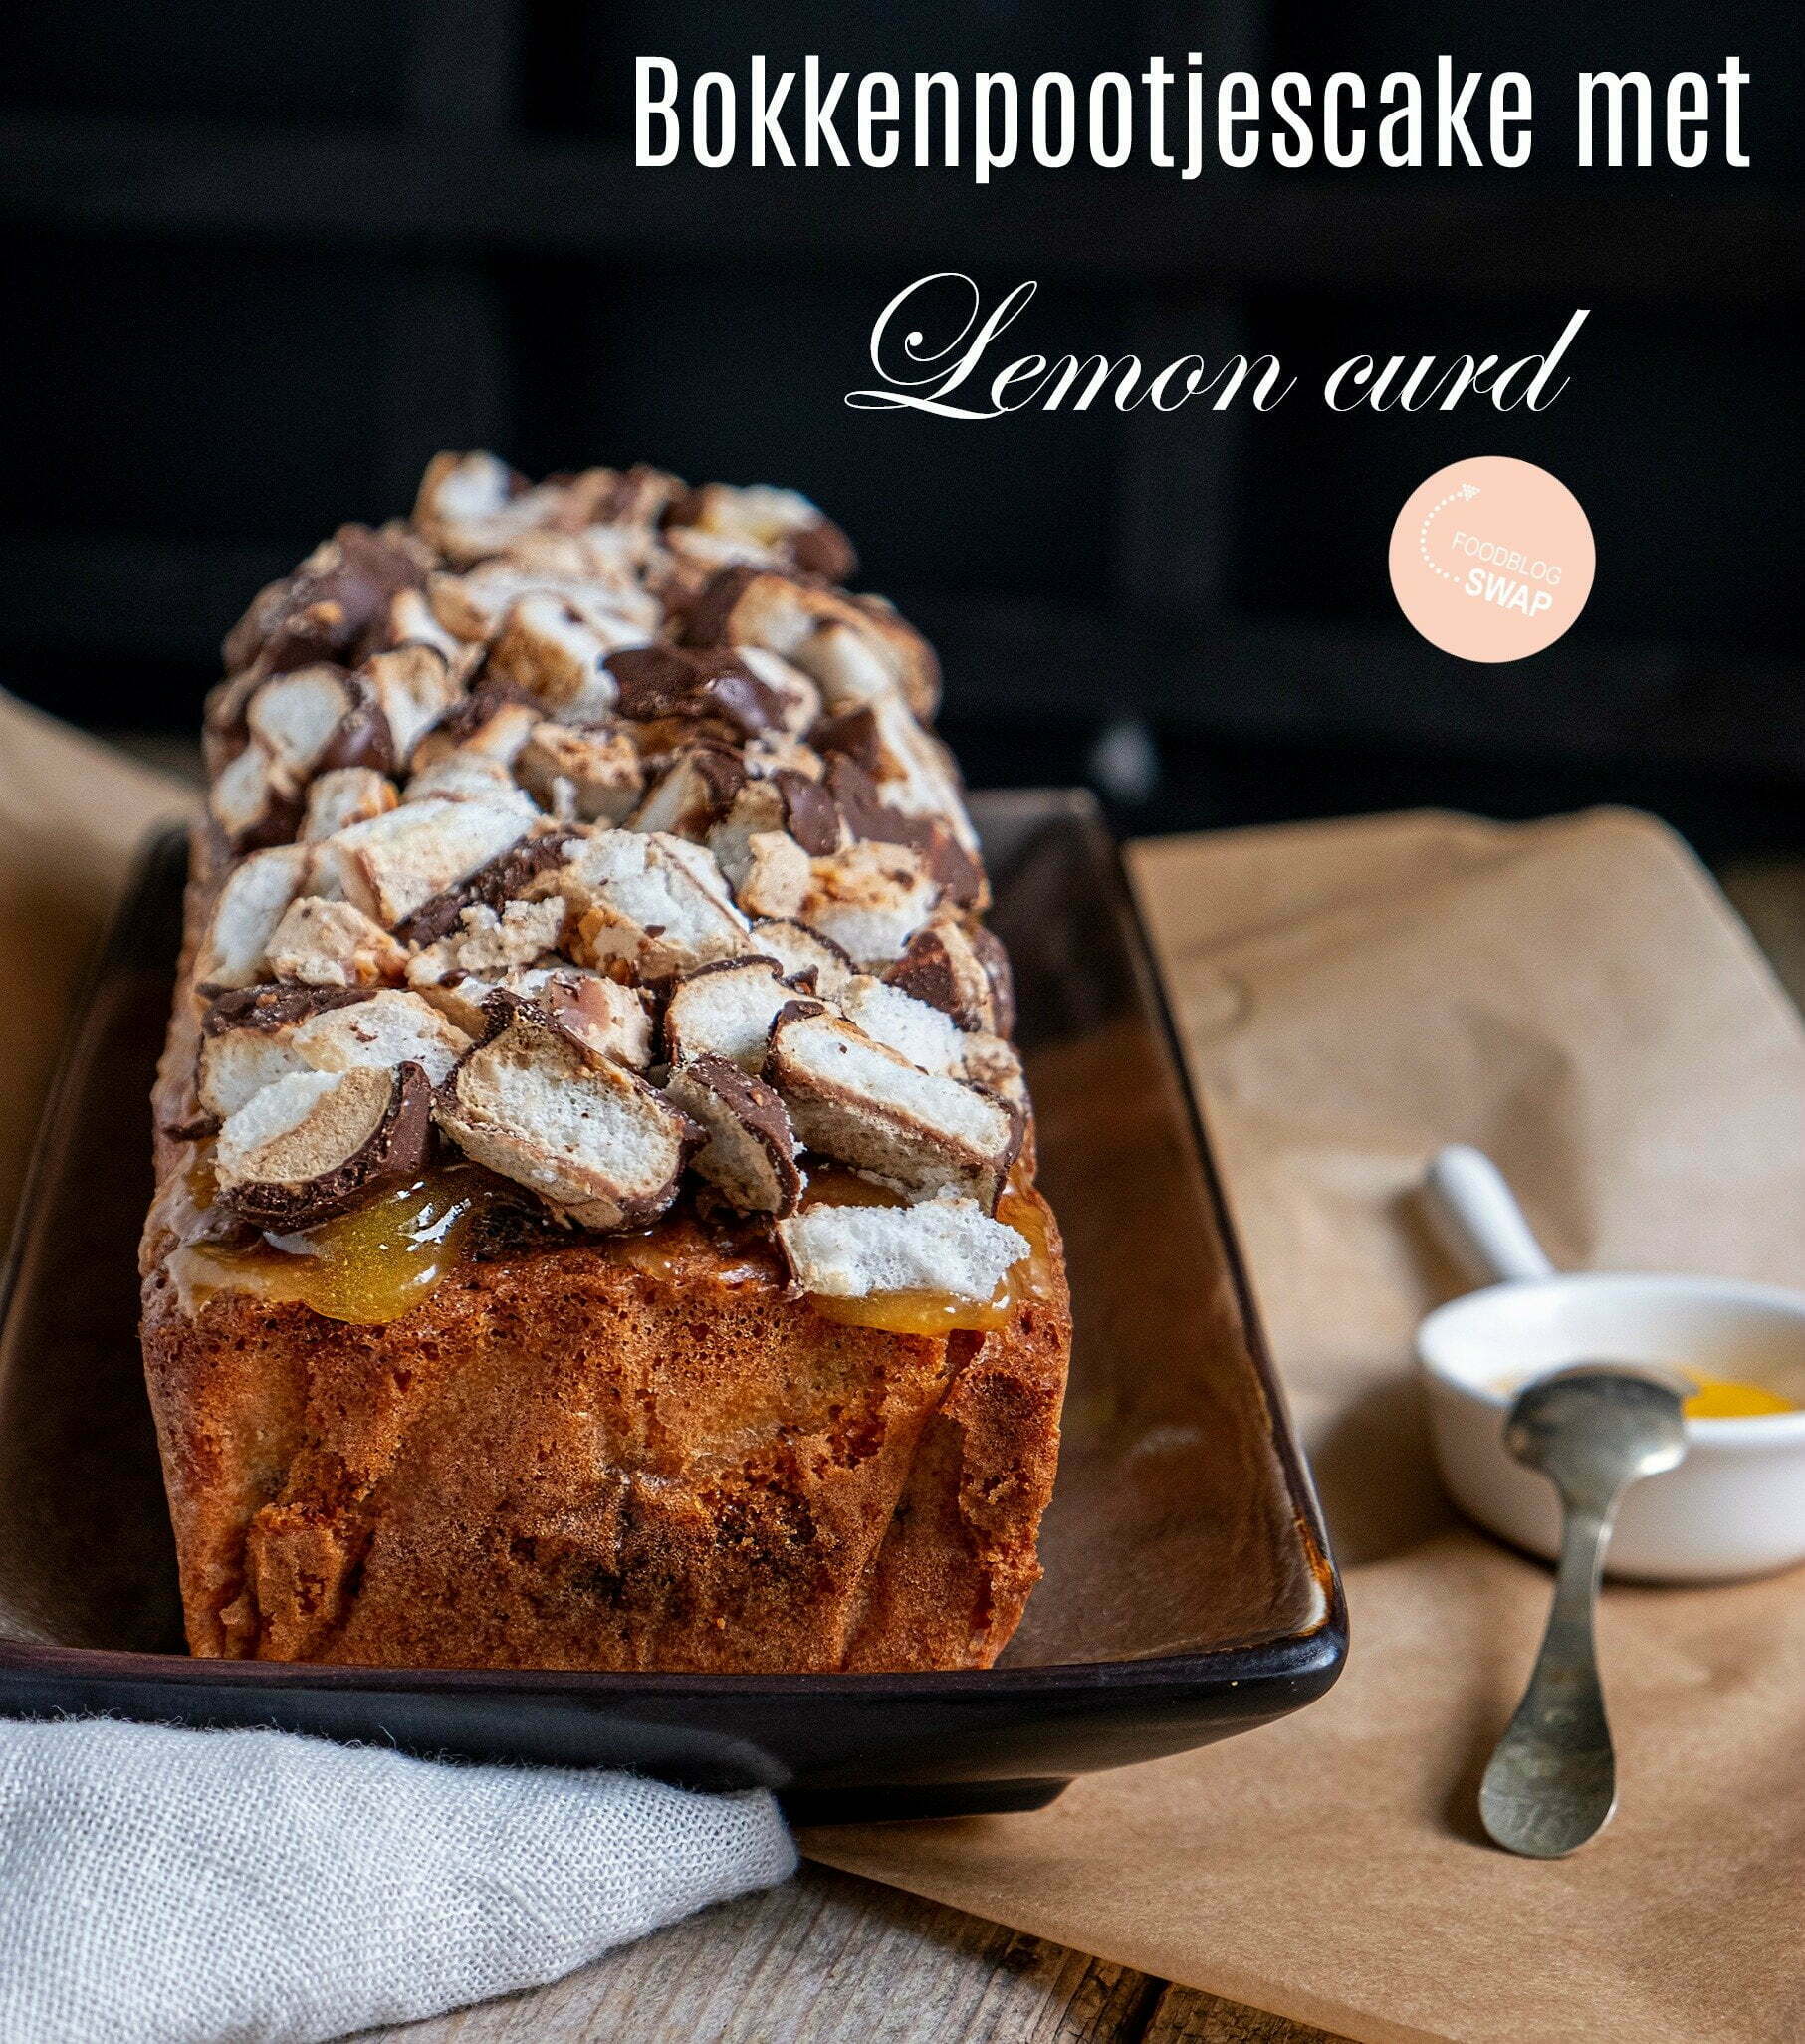 Bokkenpootjescake met Lemon curd - Foodblogswap